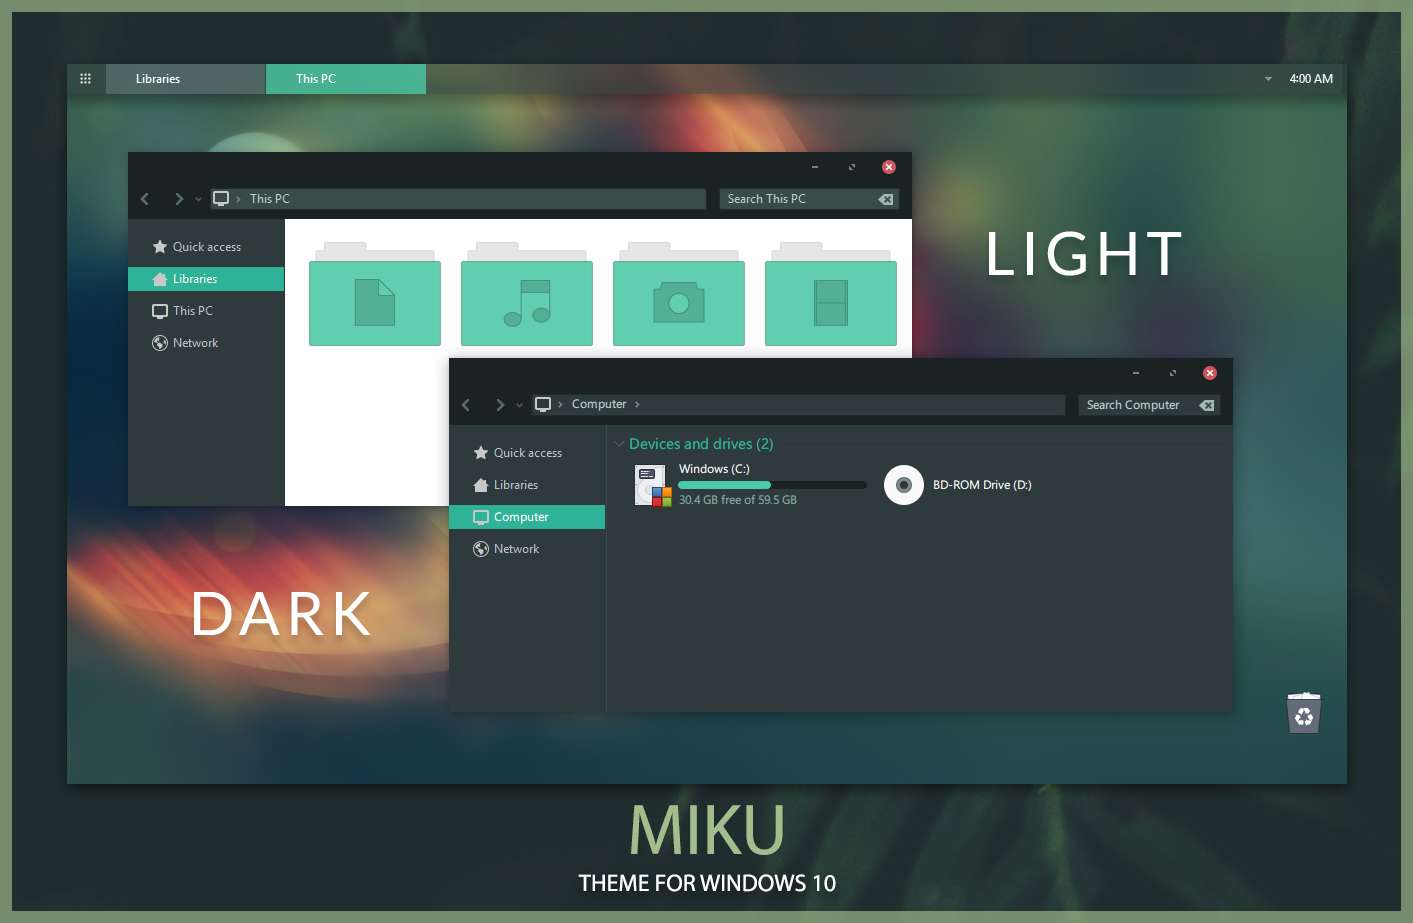 miku_theme_for_windows_10_by_niivu-dbzc22v.png